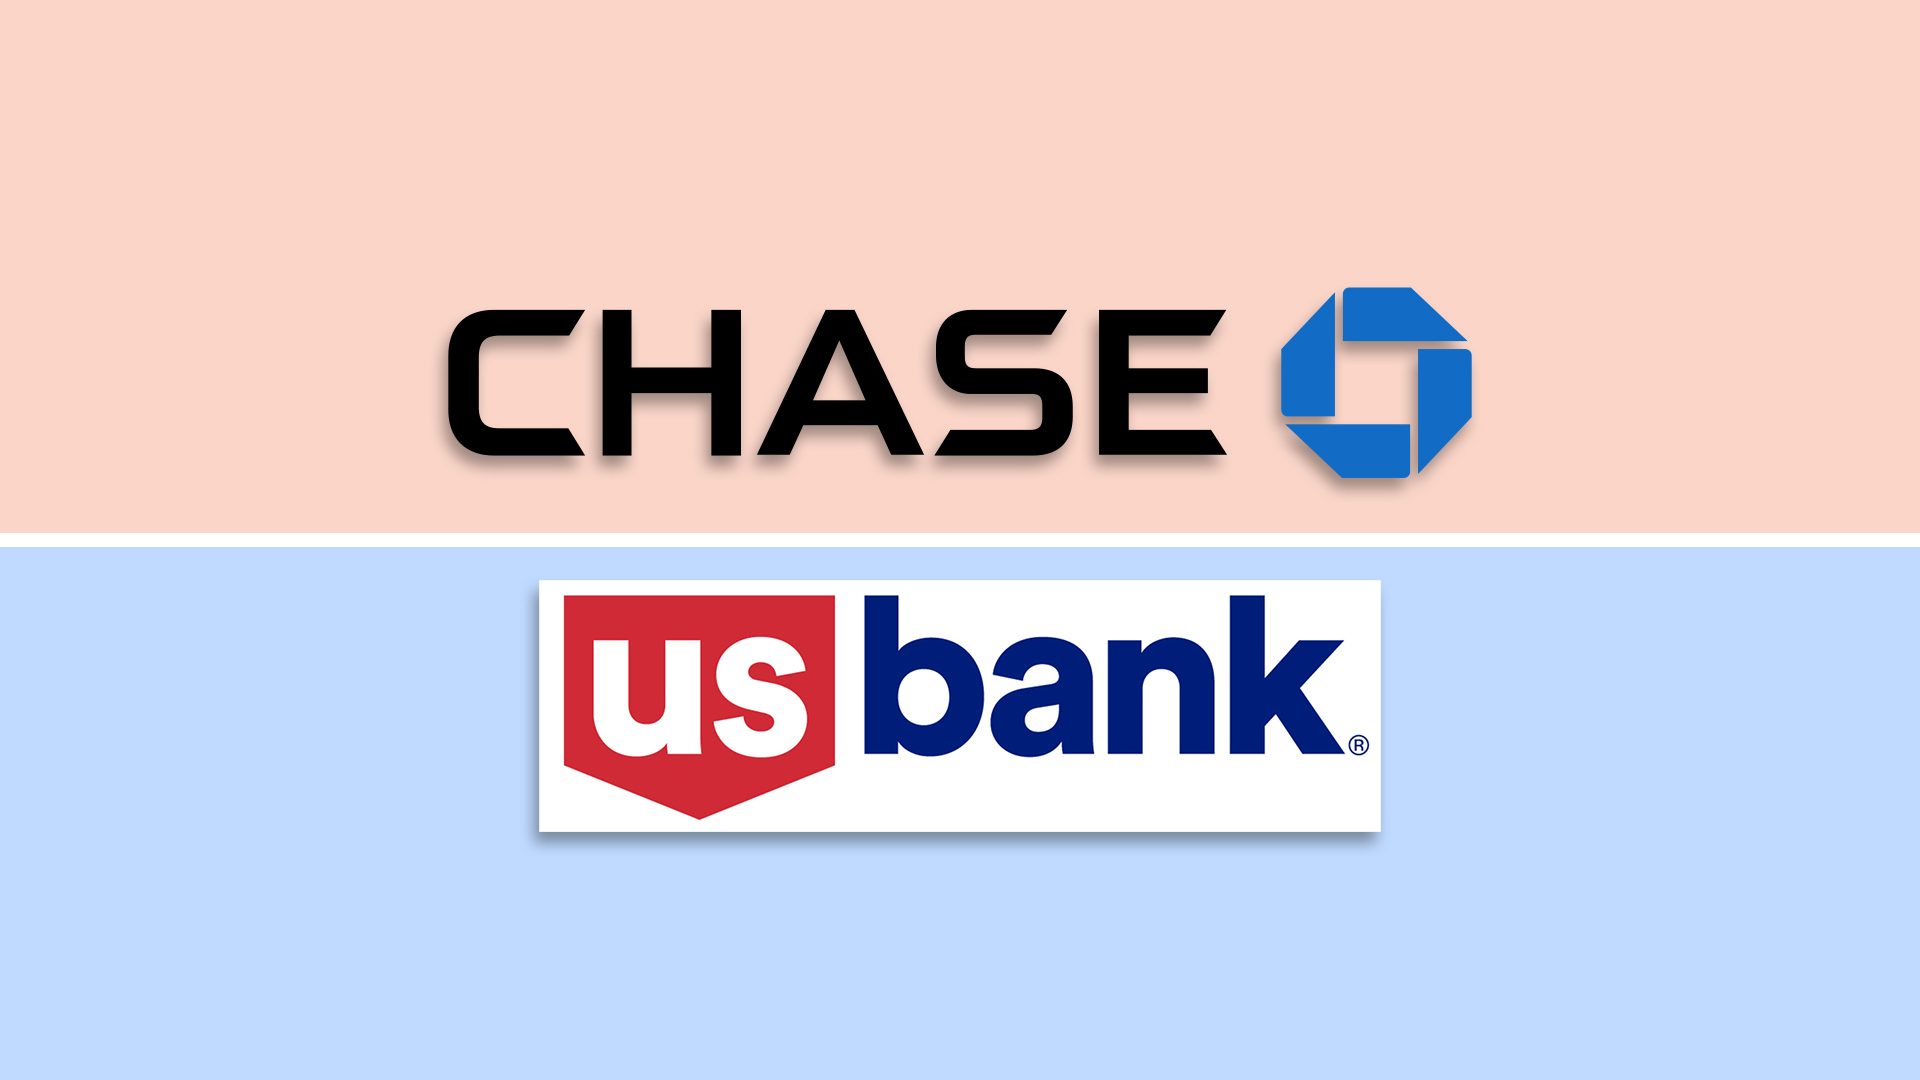 Chase and US Bank logos